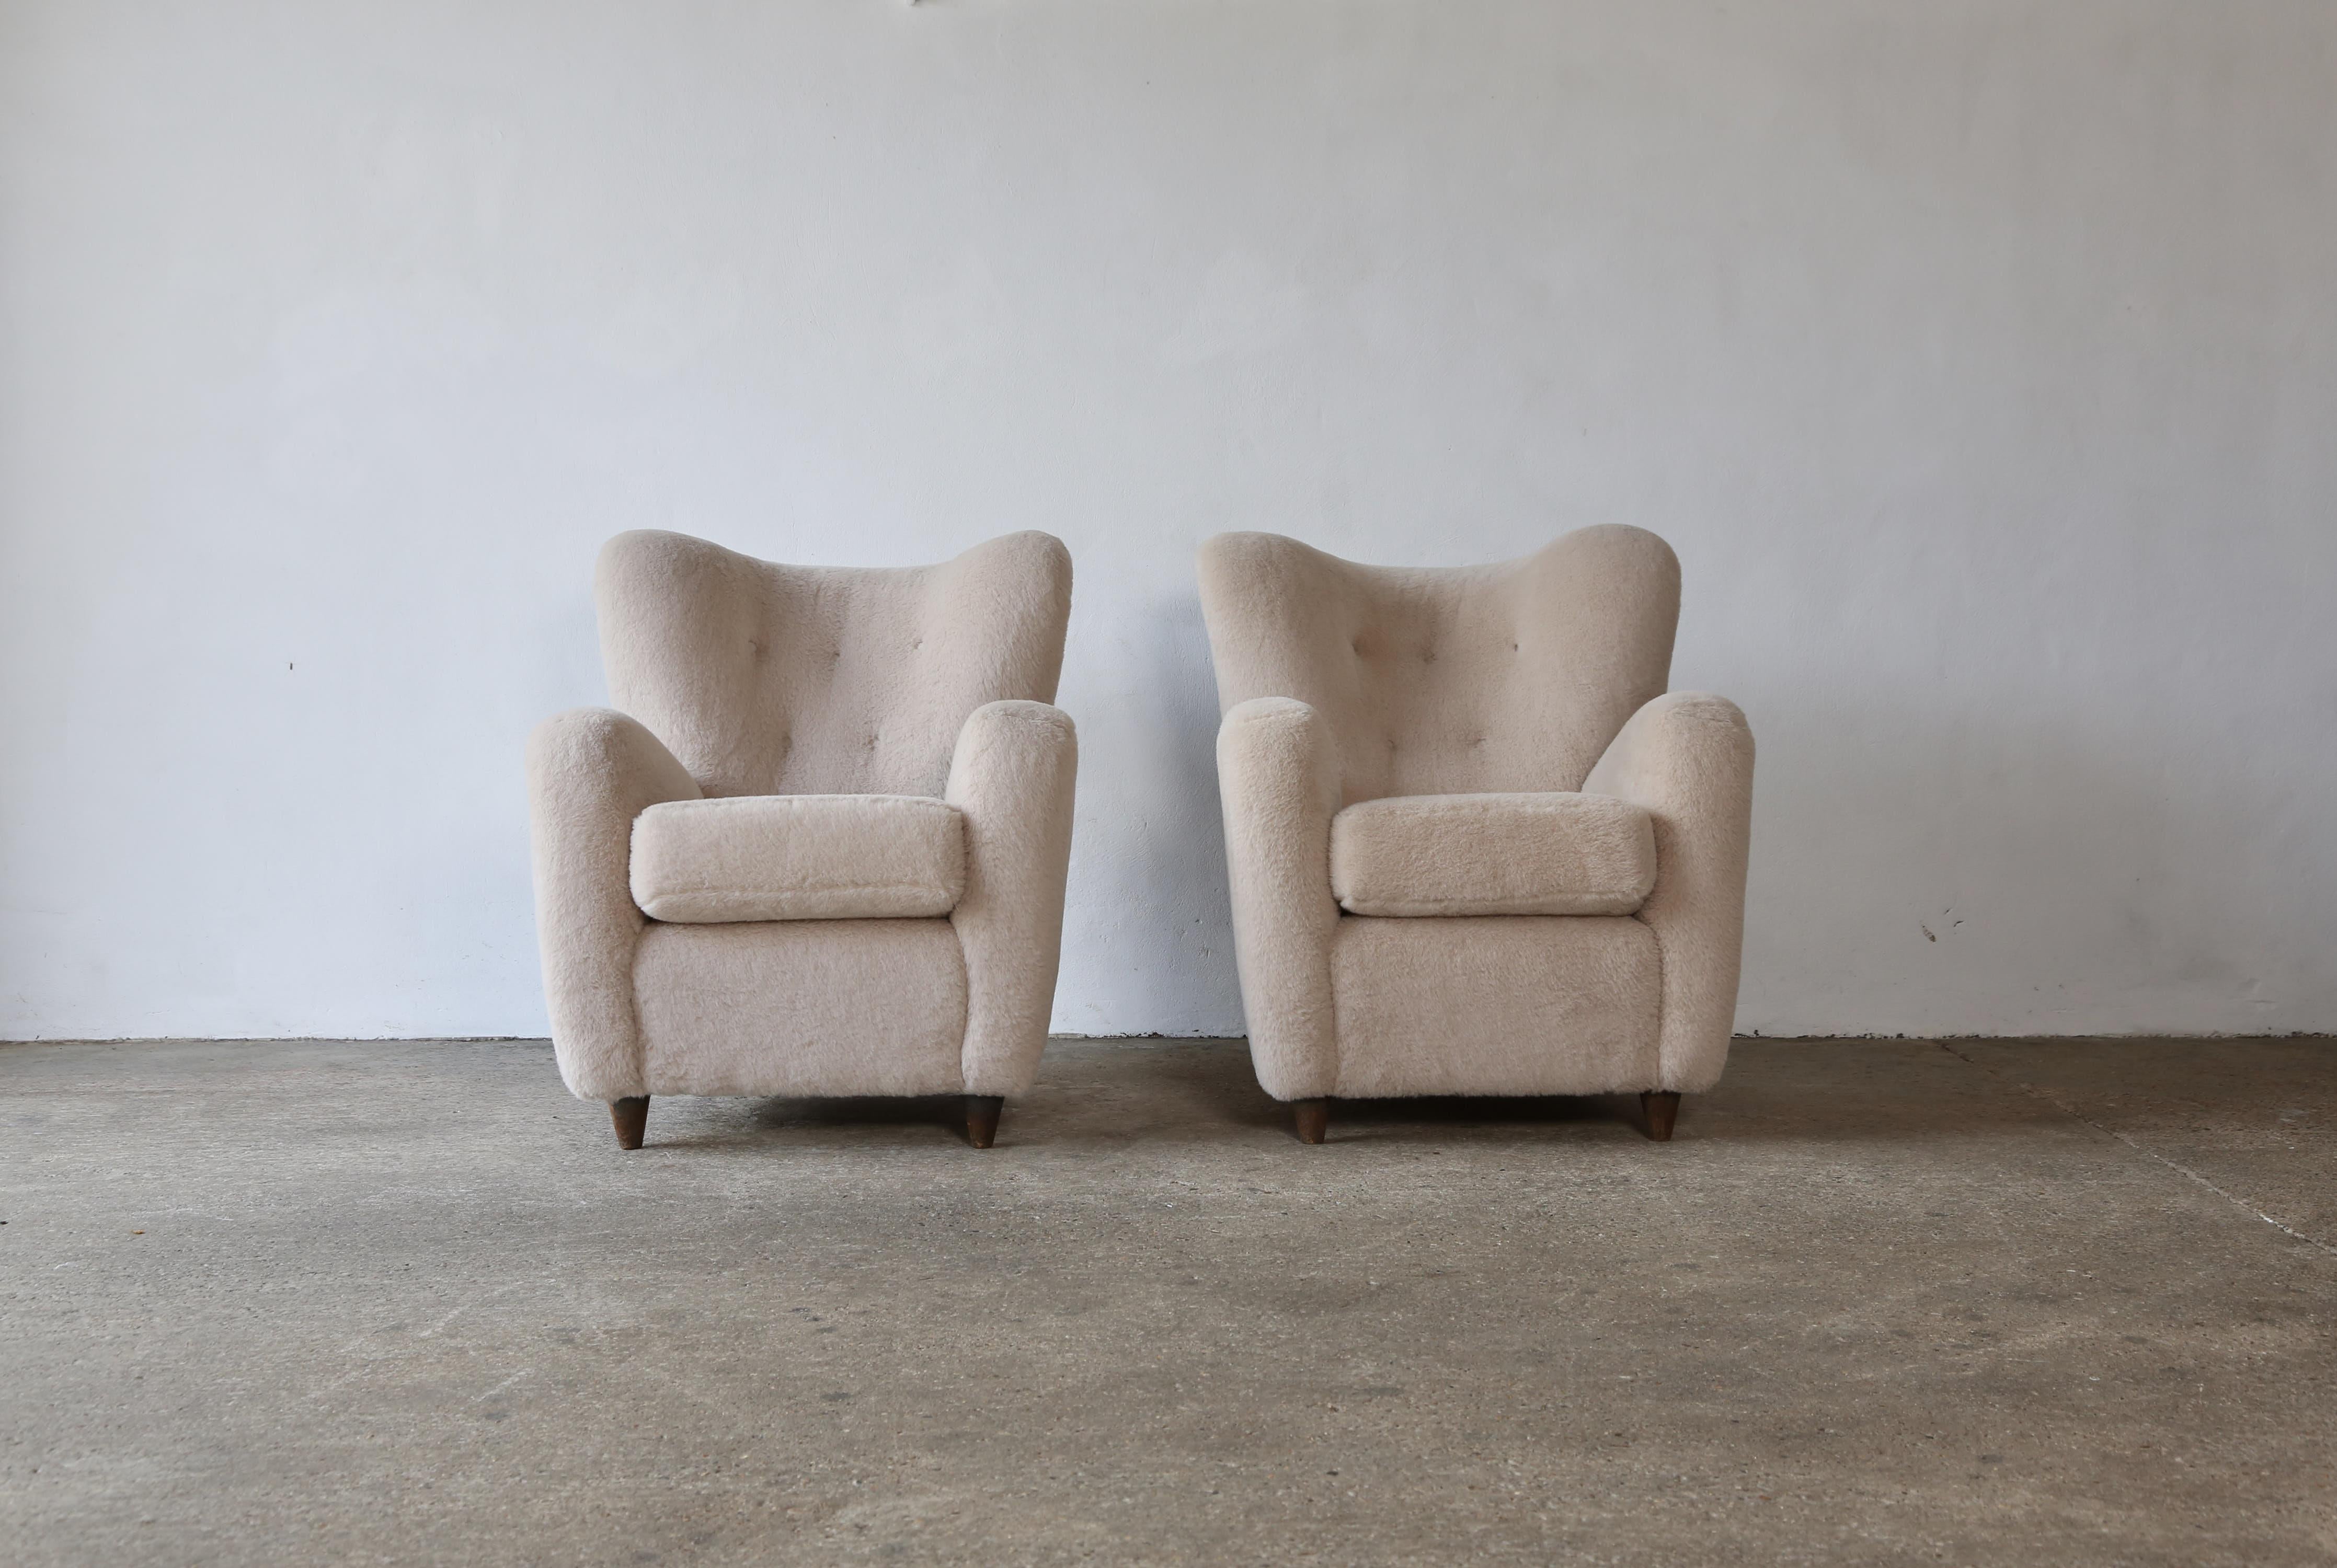 Paire de fauteuils attribués à Paolo Buffa, Italie, années 1950. Nouvellement revêtu d'une laine d'alpaga de première qualité, douce et de couleur ivoire. Expédition rapide dans le monde entier.
  


